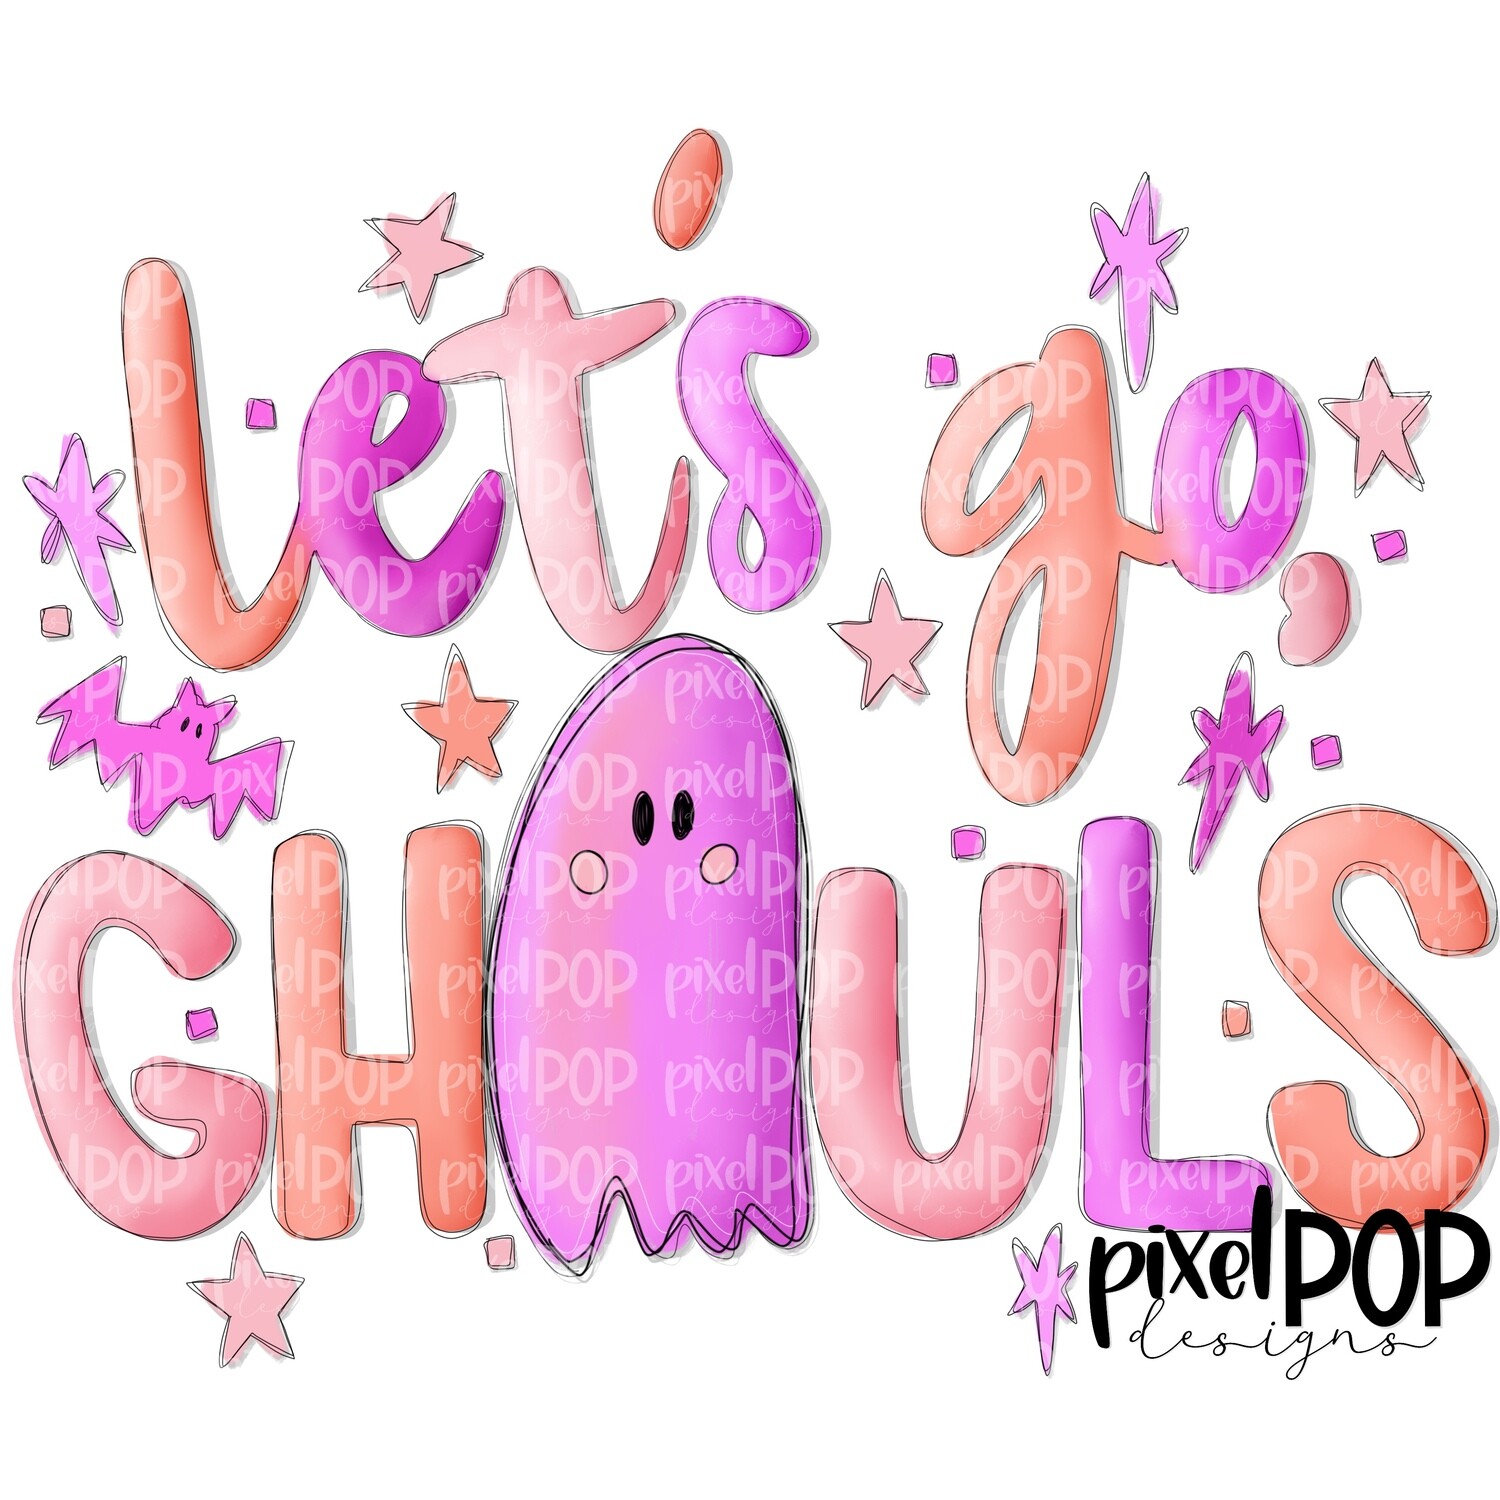 Let's Go Ghouls Ghosts Pastel Pink Sublimation PNG | Hand Drawn Sublimation Design | Sublimation PNG | Digital Download | Printable Artwork | Art